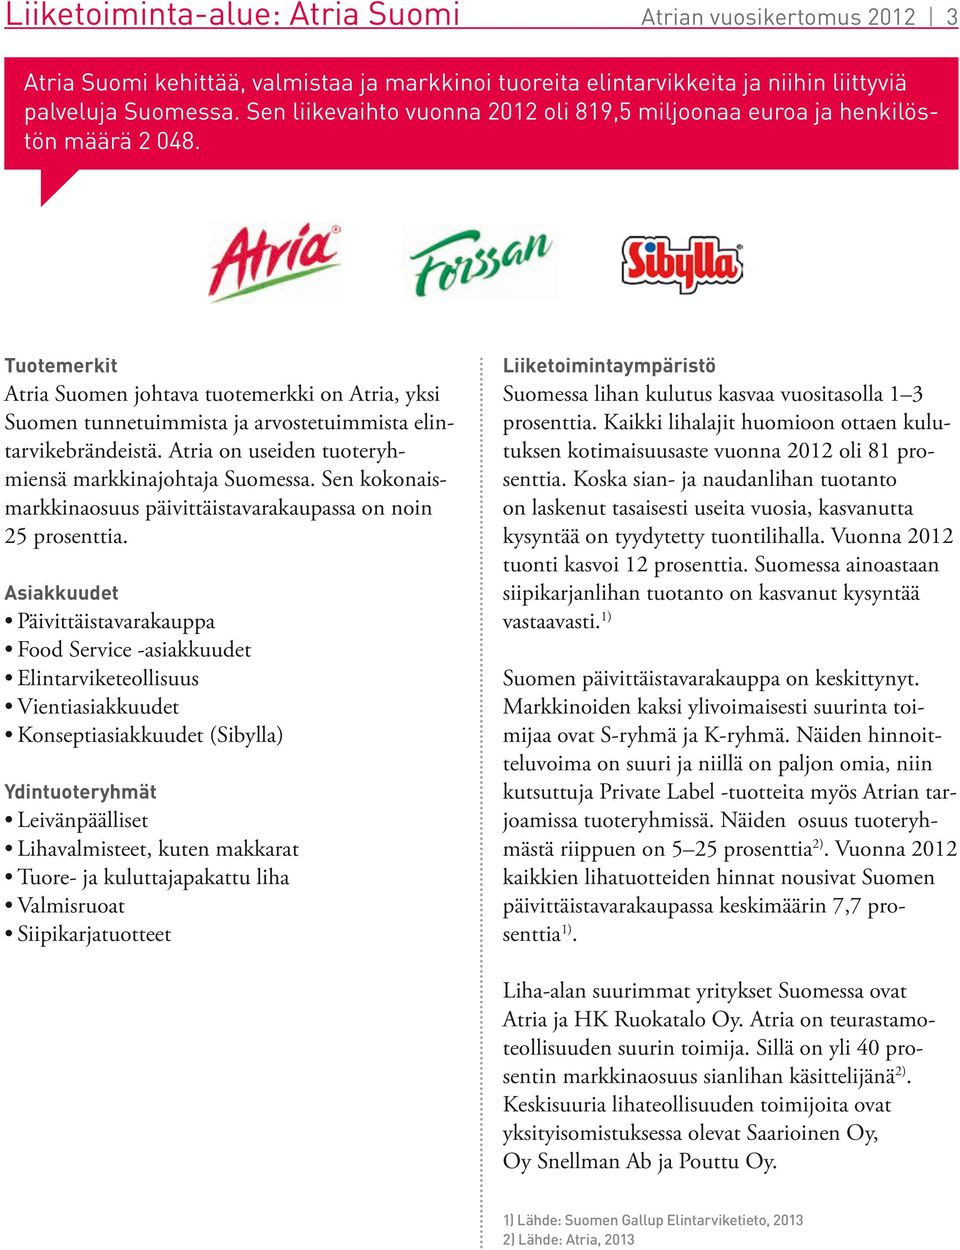 Tuotemerkit Atria Suomen johtava tuotemerkki on Atria, yksi Suomen tunnetuimmista ja arvostetuimmista elintarvikebrändeistä. Atria on useiden tuoteryhmiensä markkinajohtaja Suomessa.